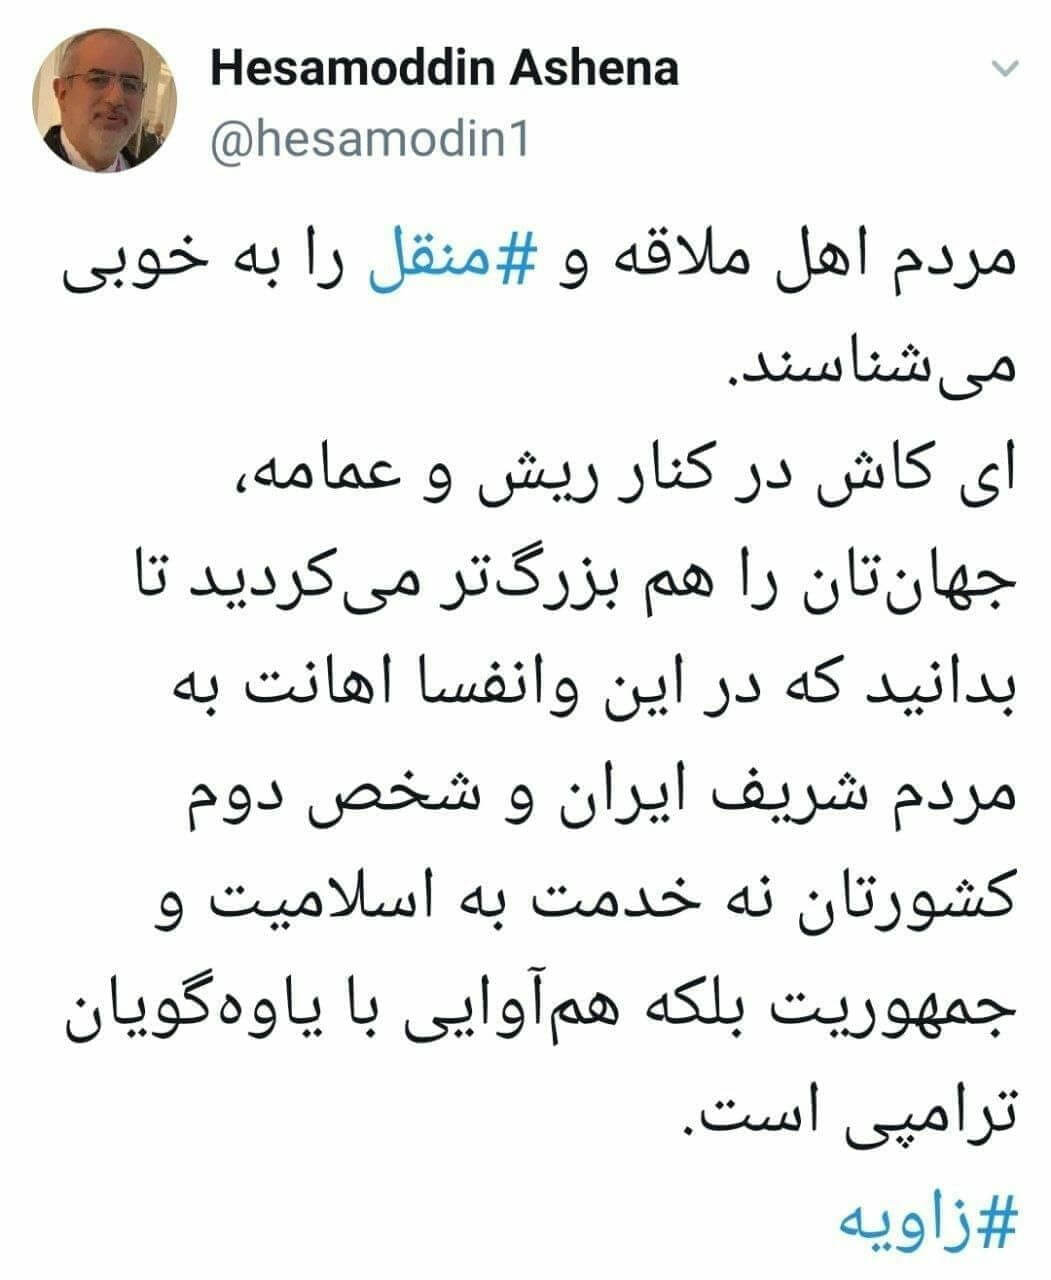 حجت الاسلام احمد جهان بزرگی در برنامه مناظره سیاسی «زاویه» از شبکه چهارم سیما اهانت های بی سابقه ای به حسن روحانی می کند.